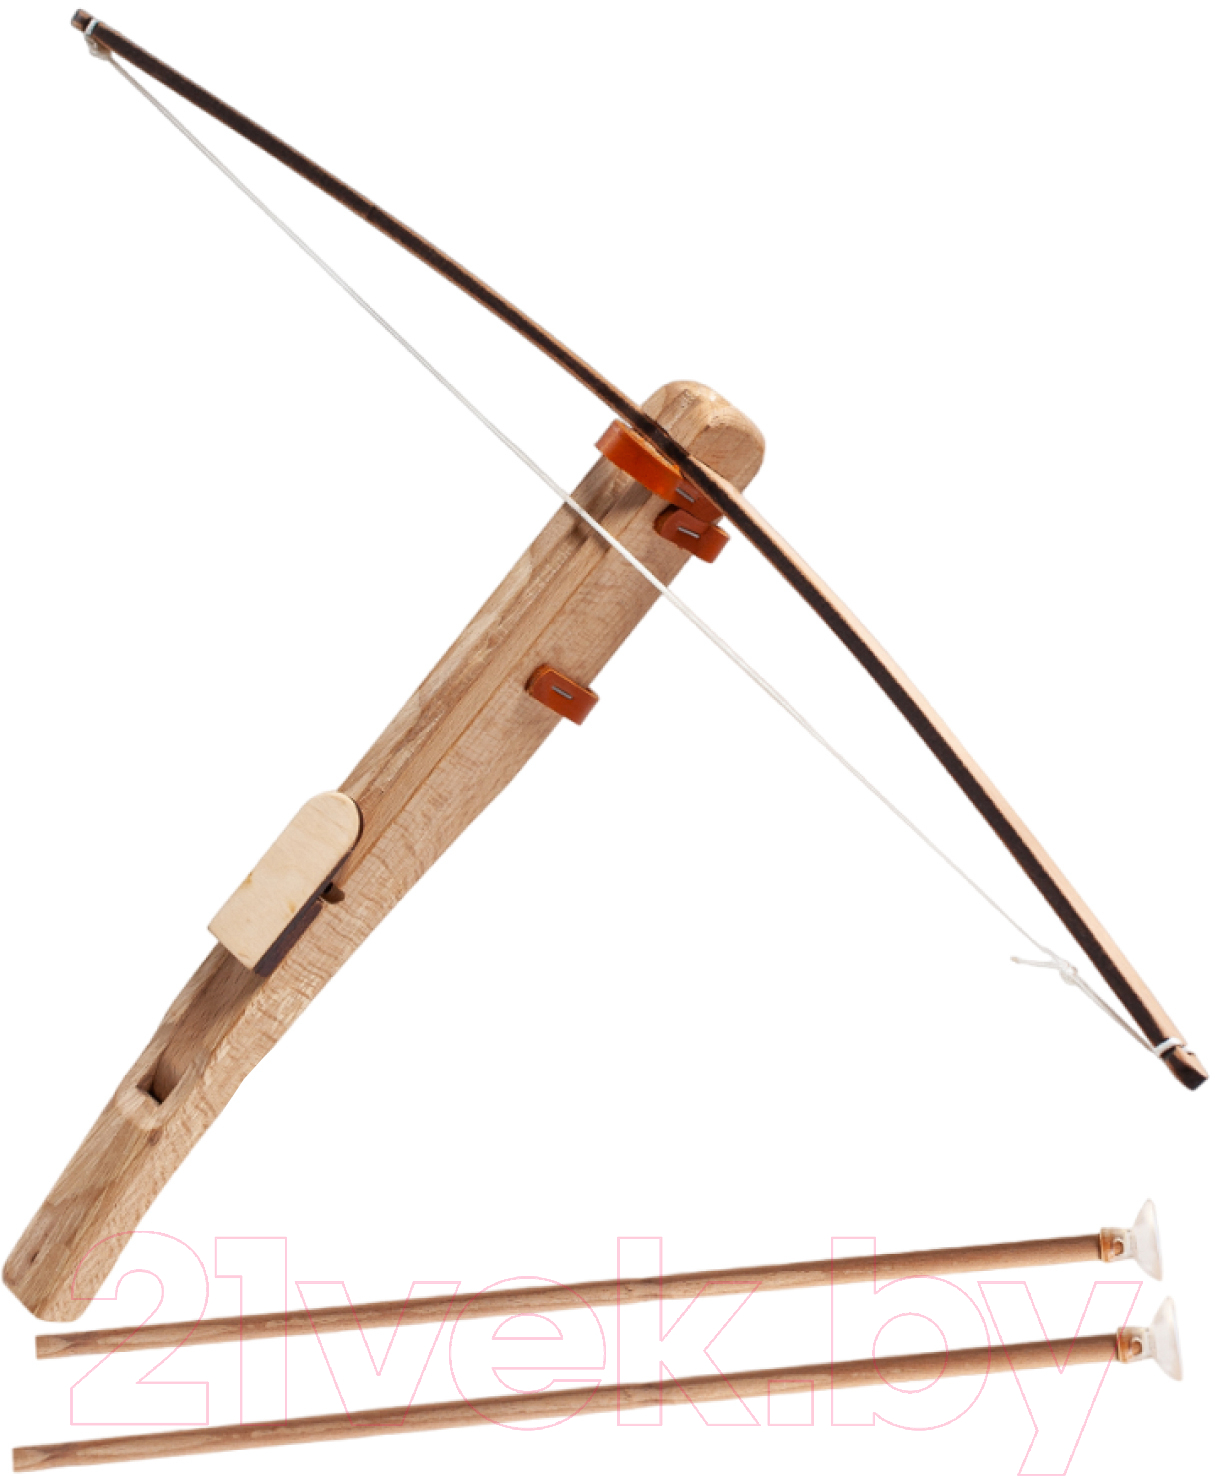 Арбалет игрушечный Древо Игр С двумя стрелами / DI-M24